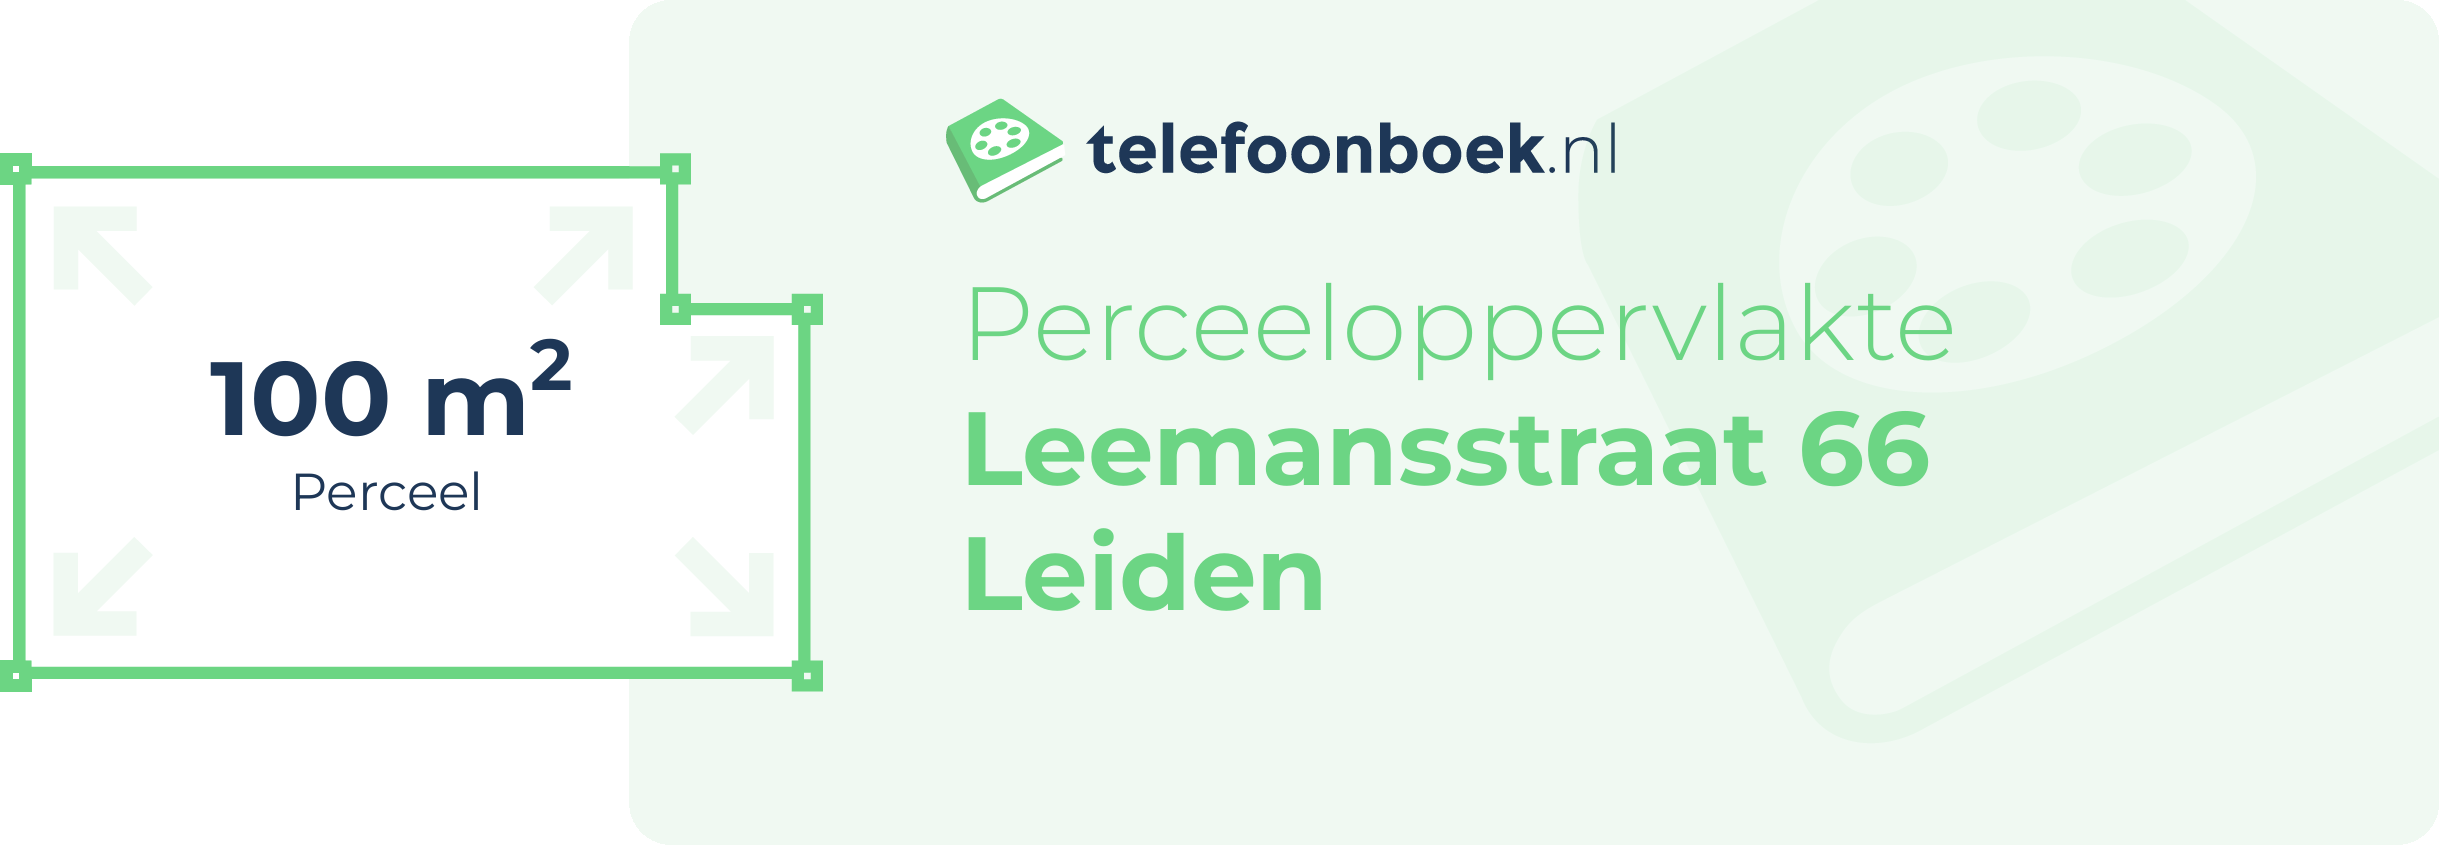 Perceeloppervlakte Leemansstraat 66 Leiden